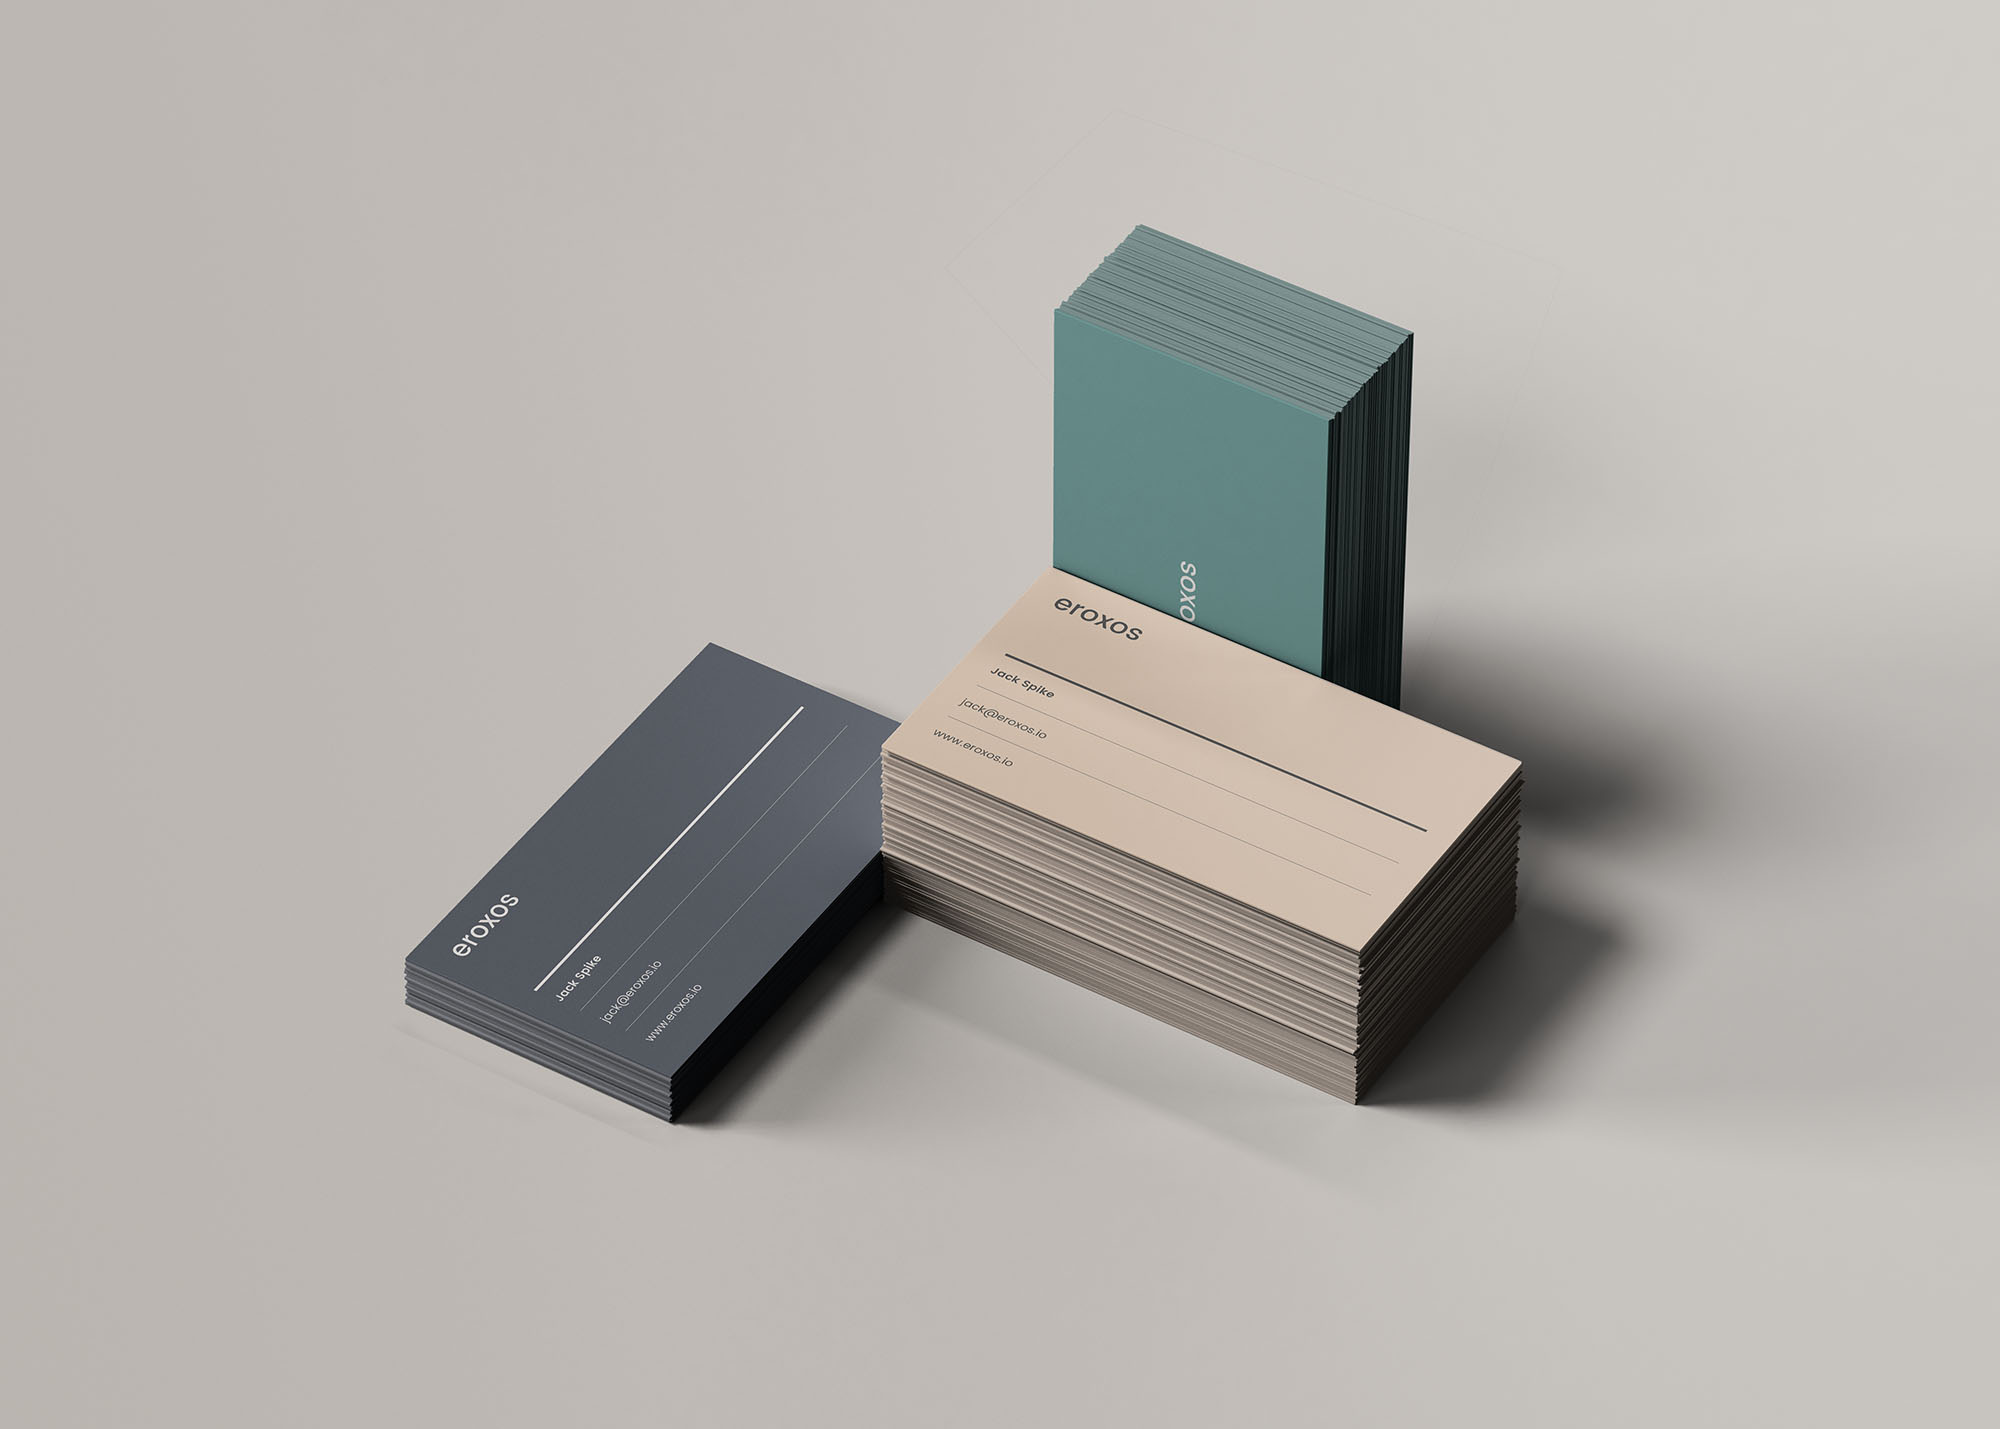 企业名片三种堆叠状态展示第一素材精选模板 3 Business Card Stacks Mockup插图